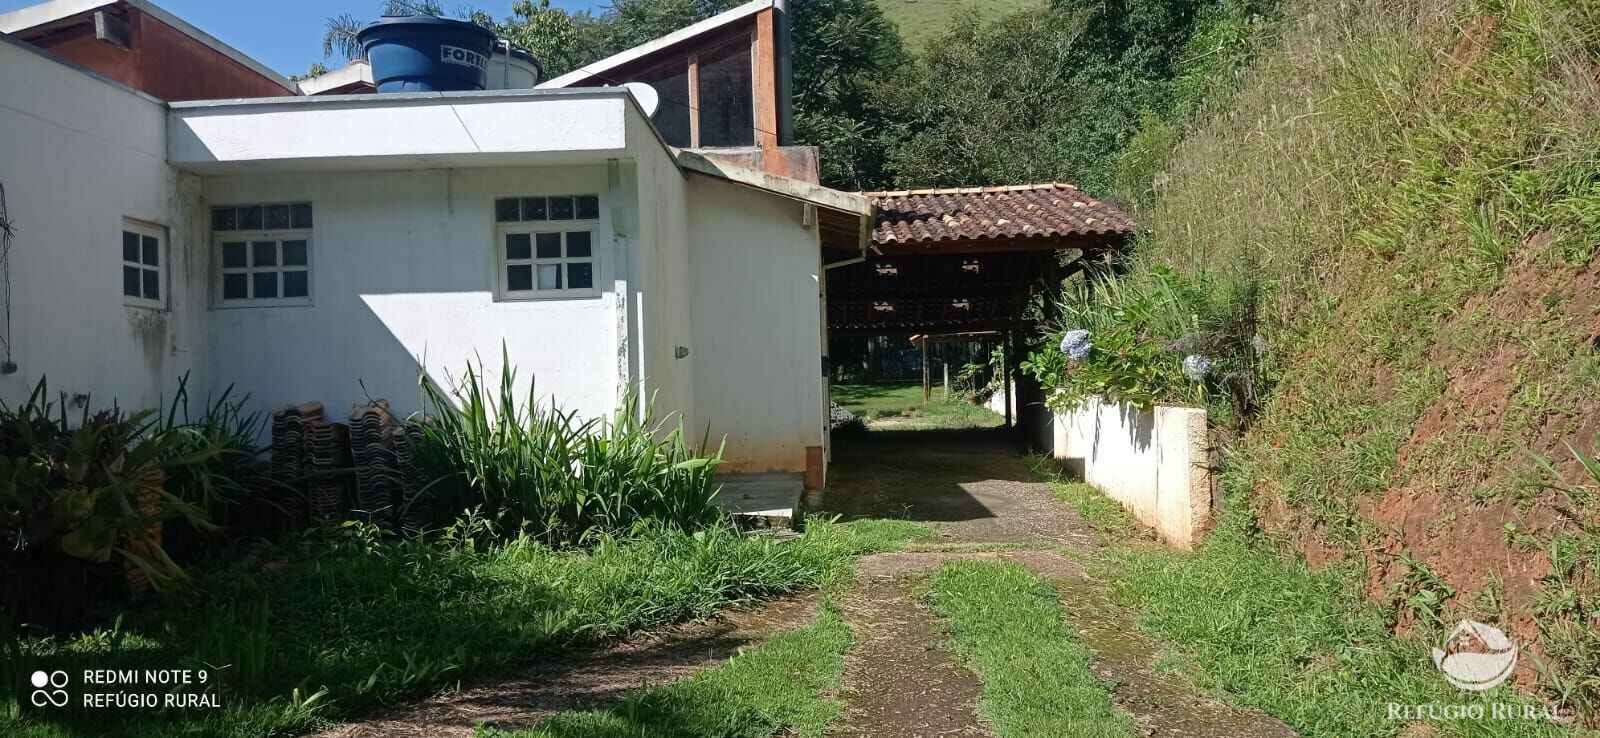 Sítio de 3 ha em São José dos Campos, SP